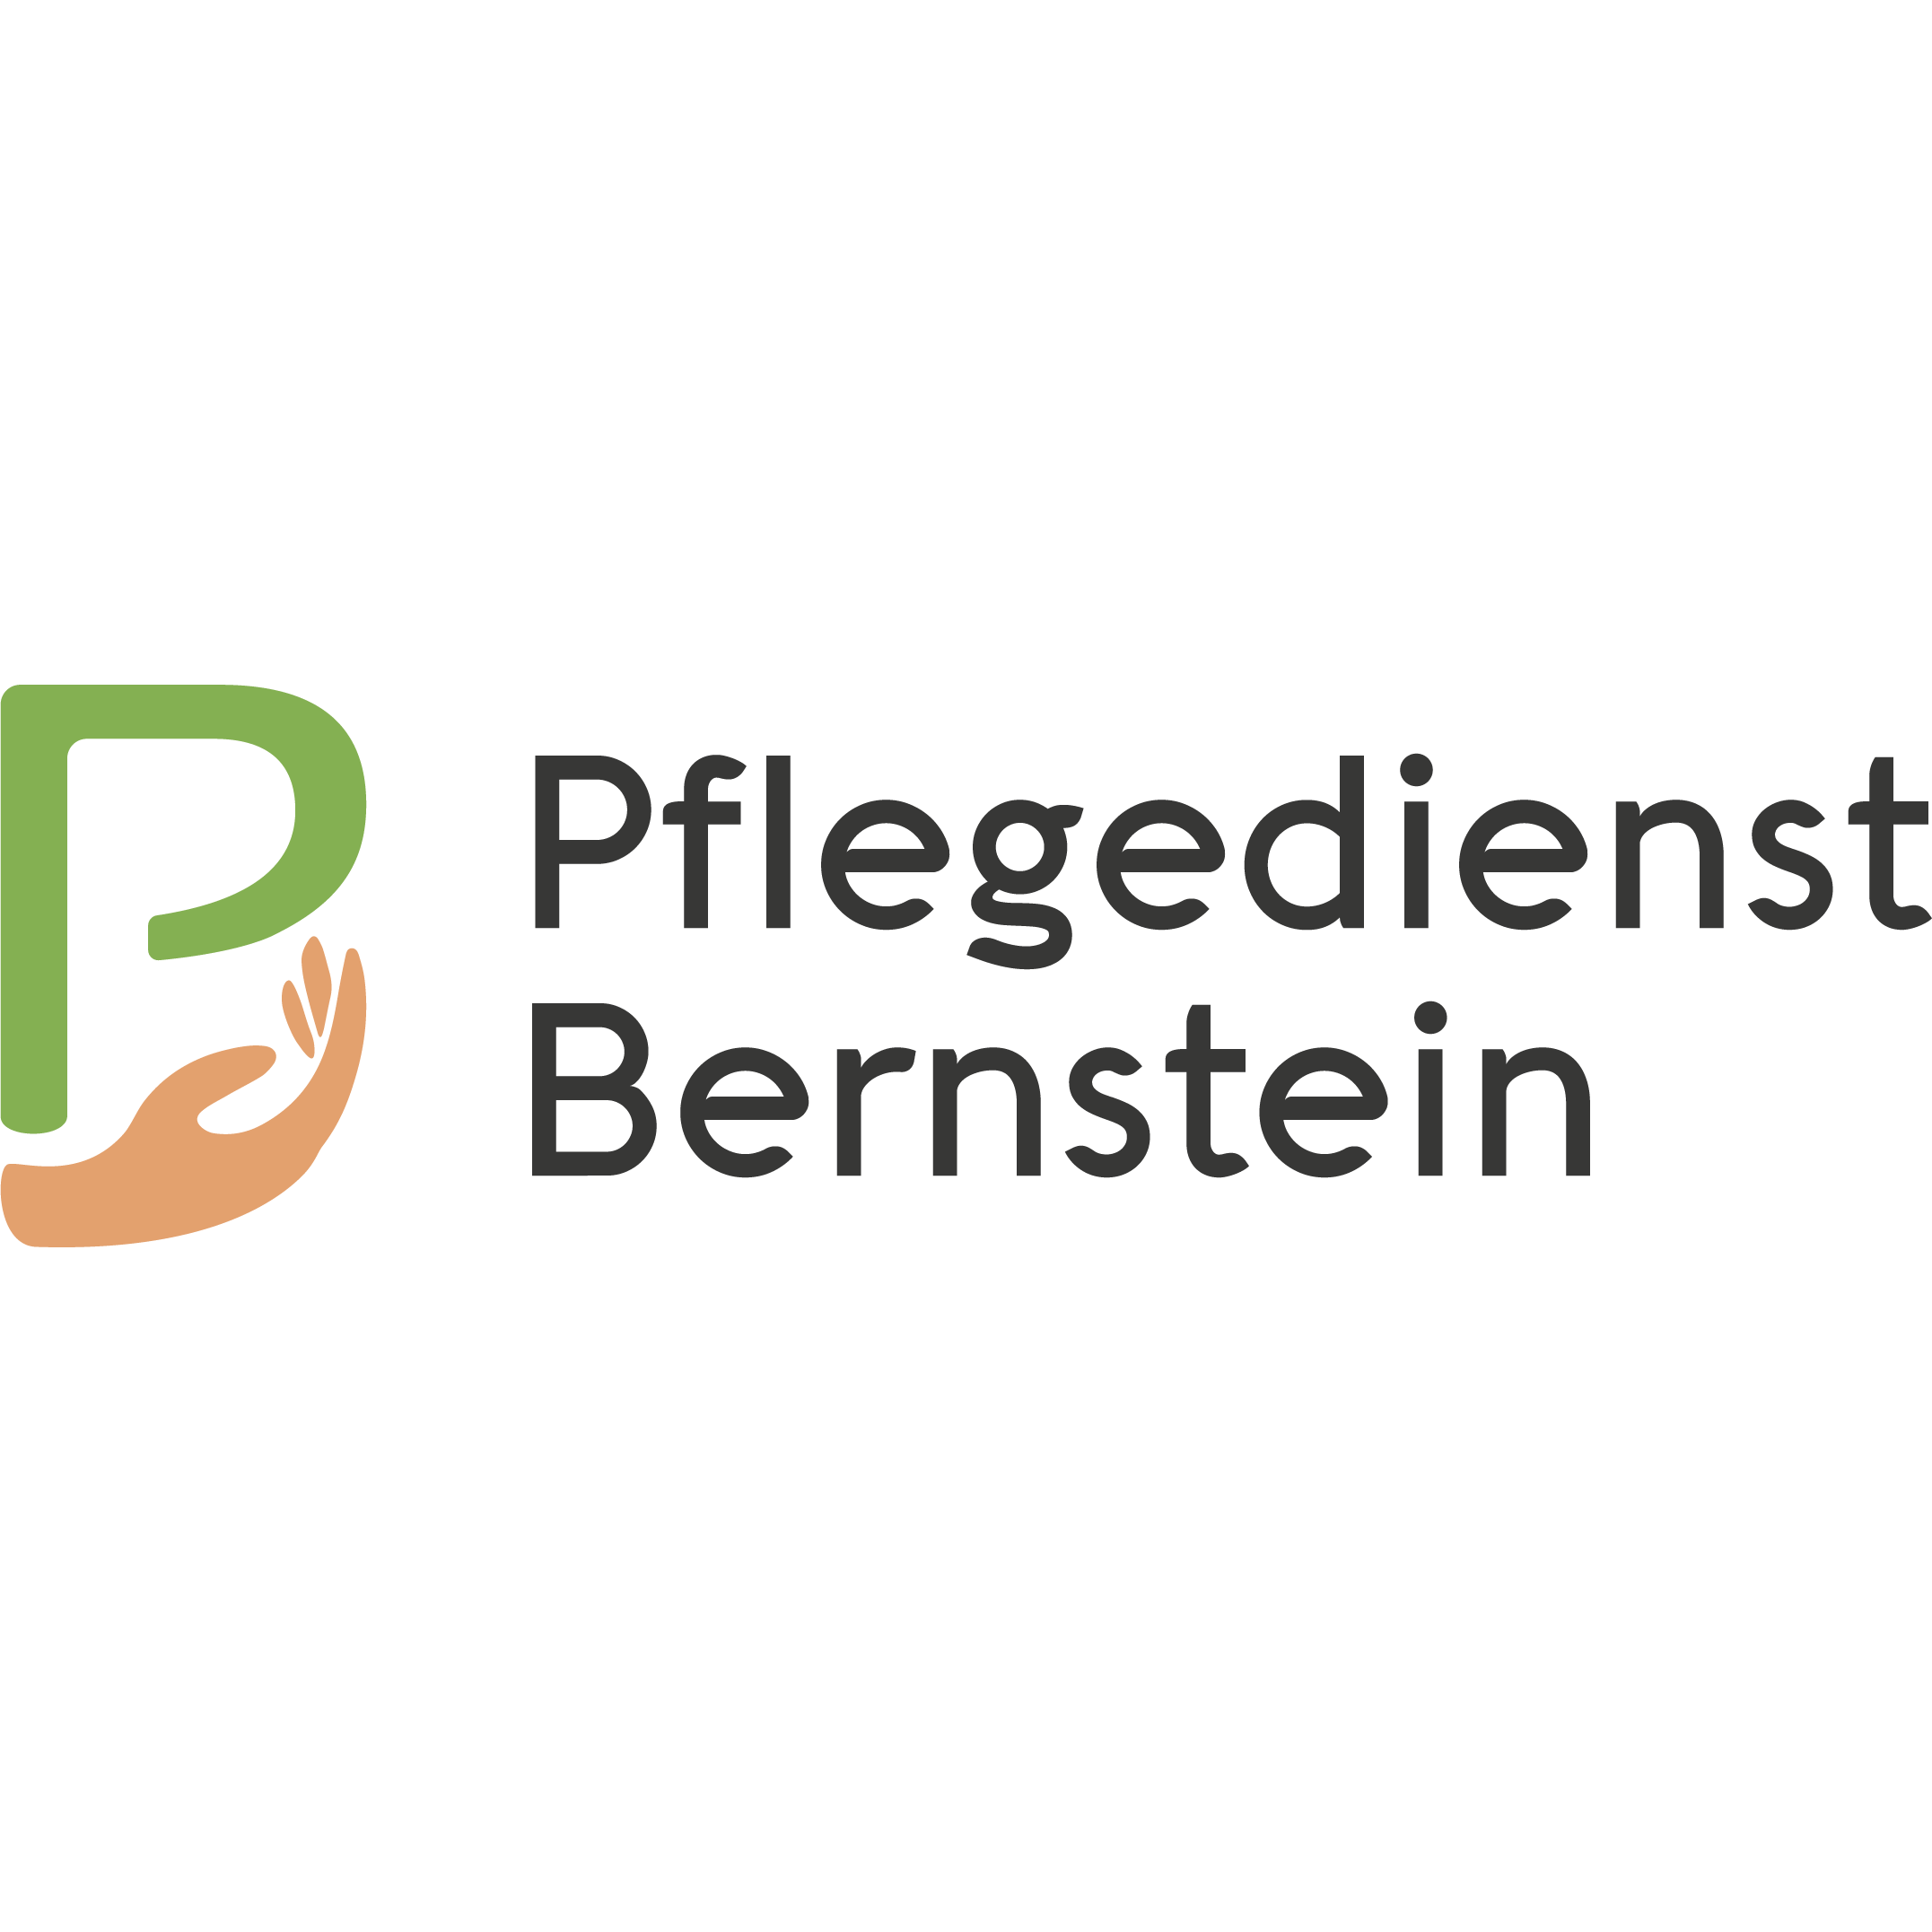 Pflegedienst Bernstein GmbH in Düsseldorf - Logo